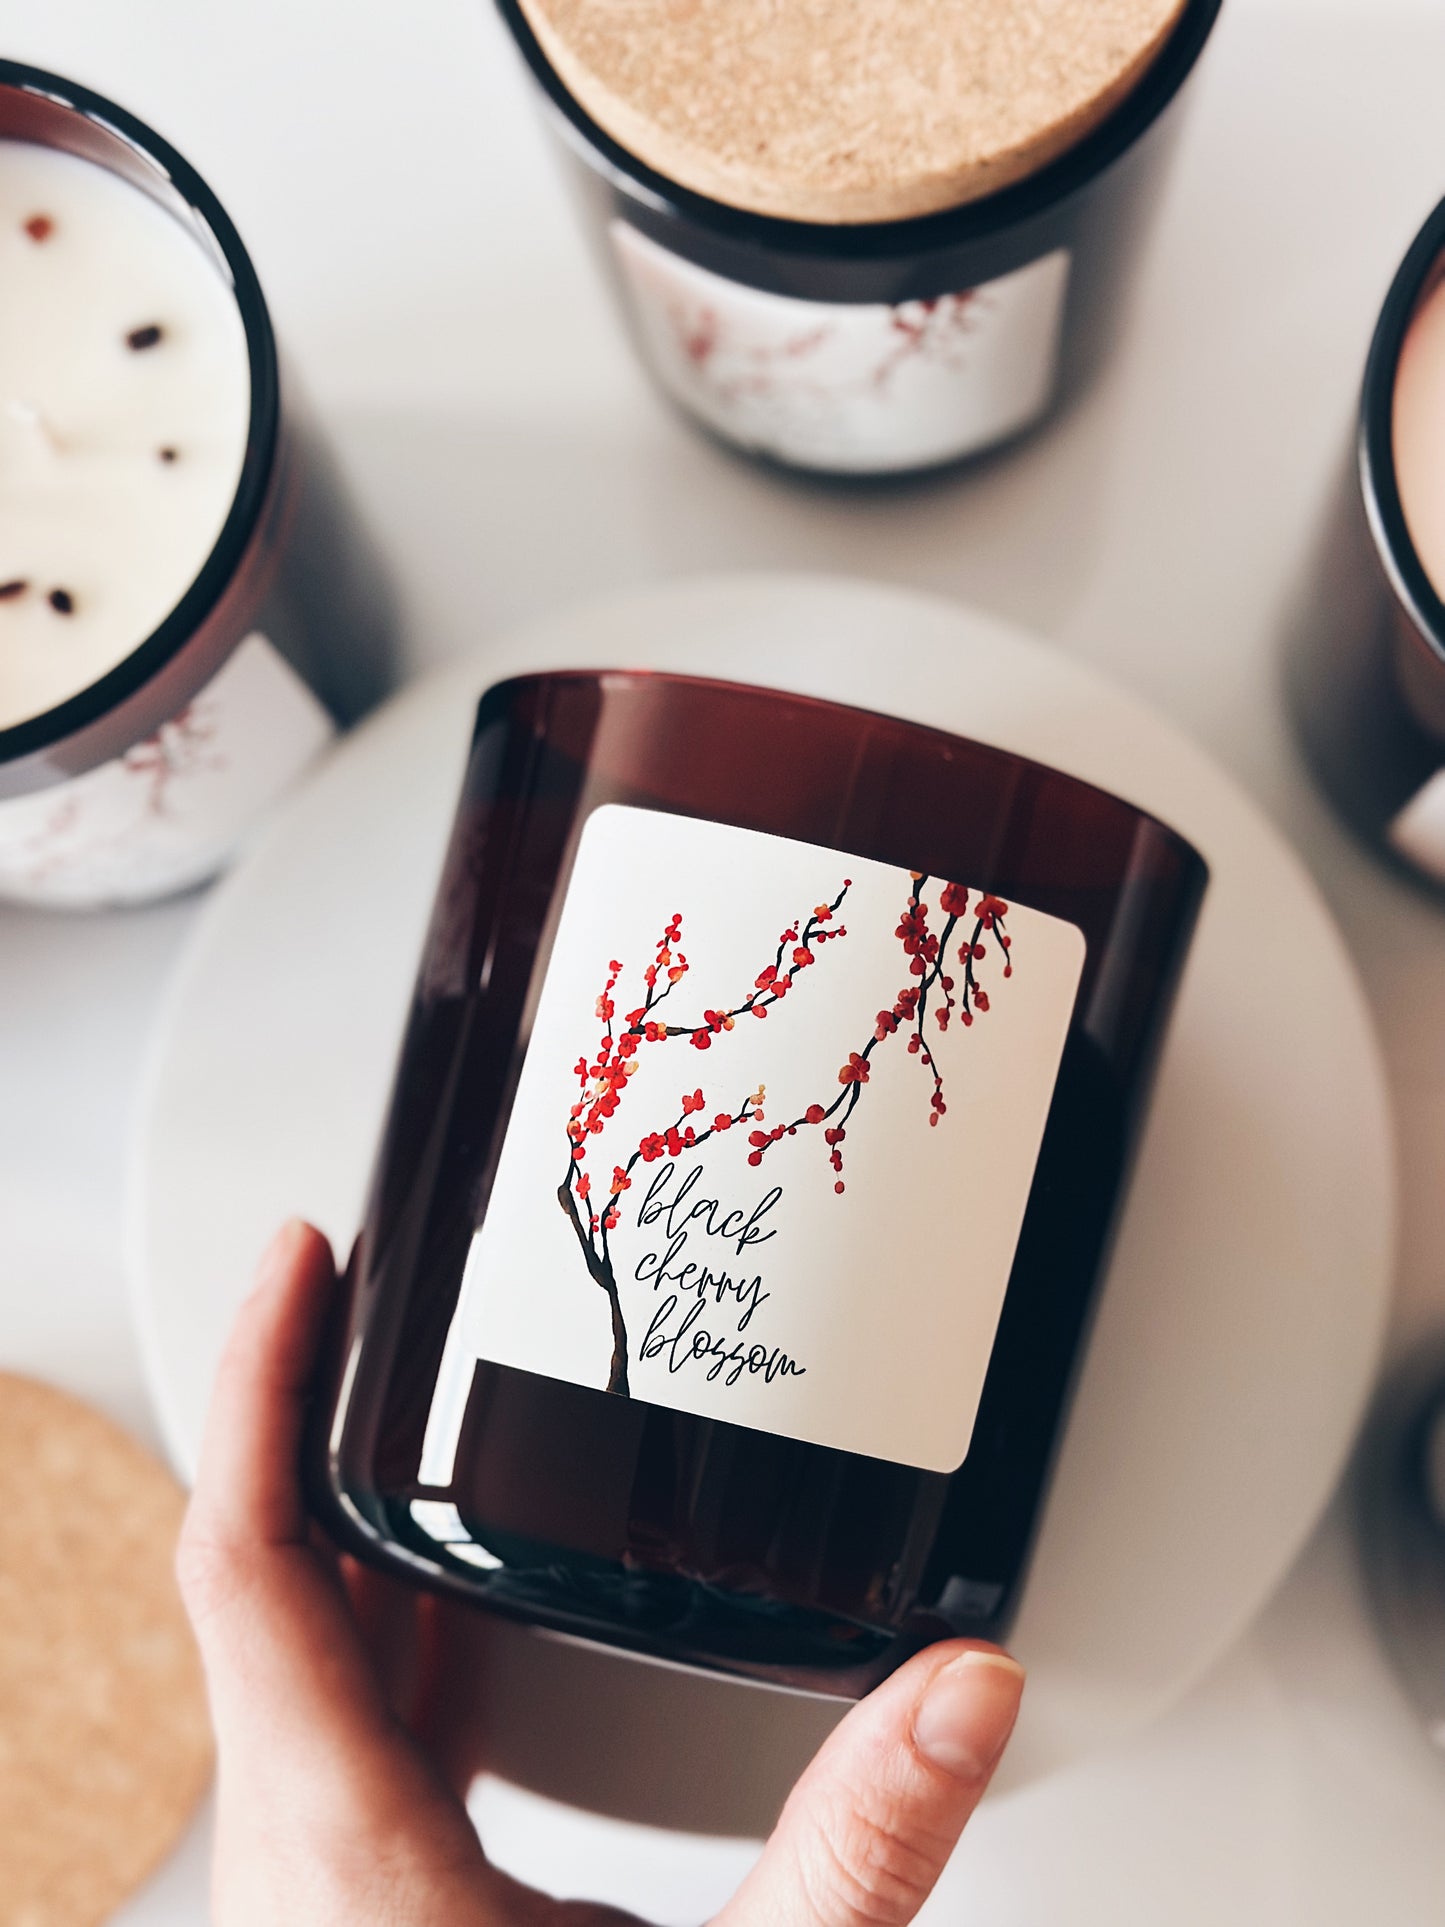 en mer LTD | black cherry blossom | limited batch soy wax candle